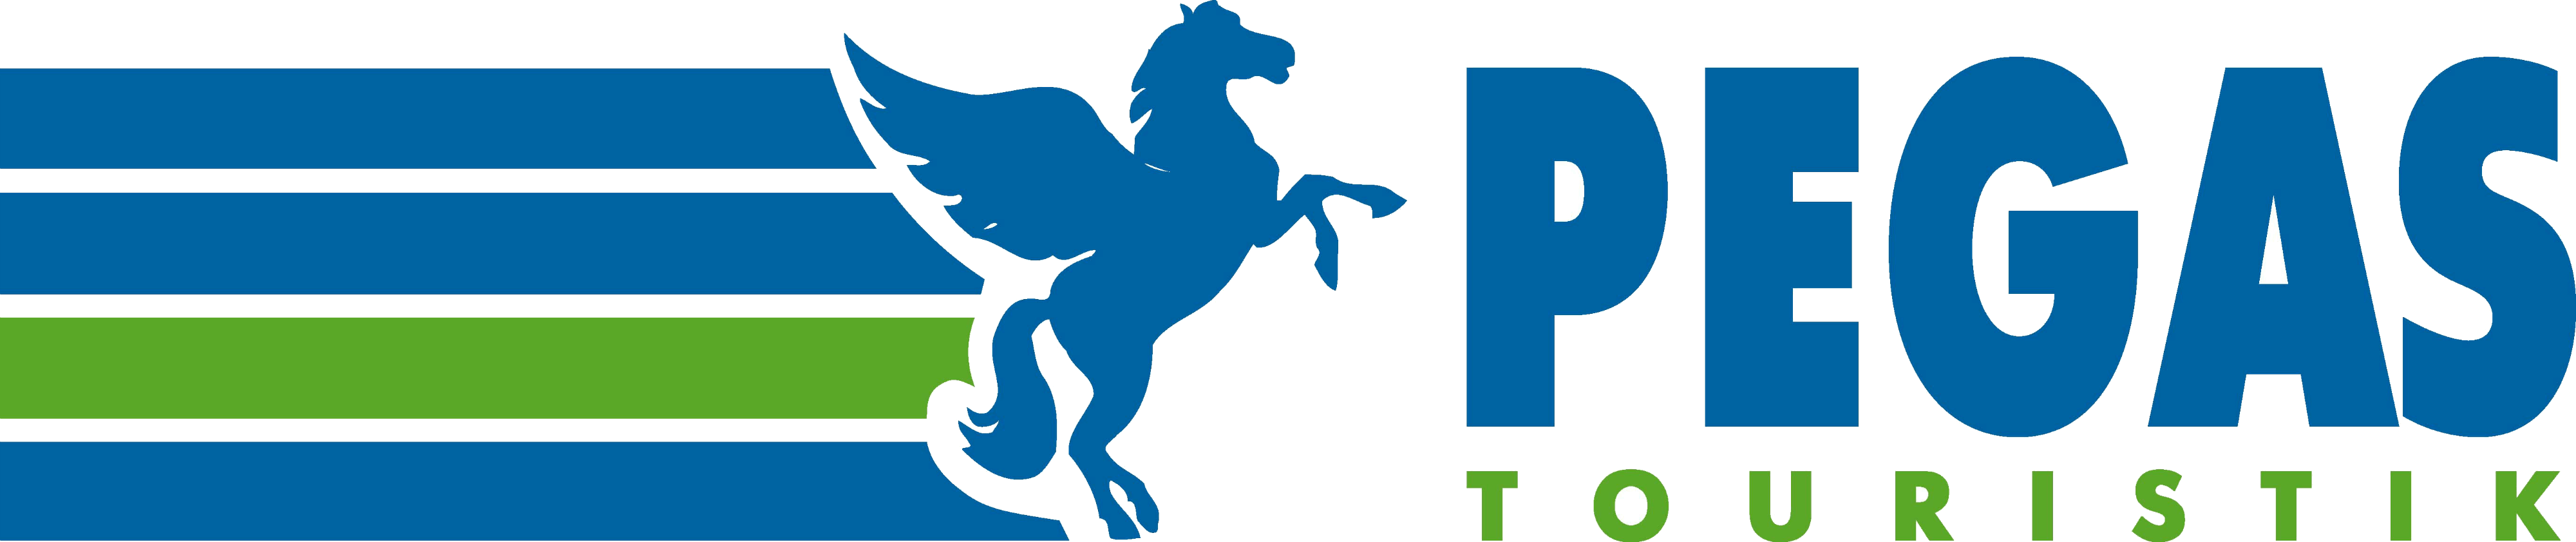 Pegas Touristik logo, logotype